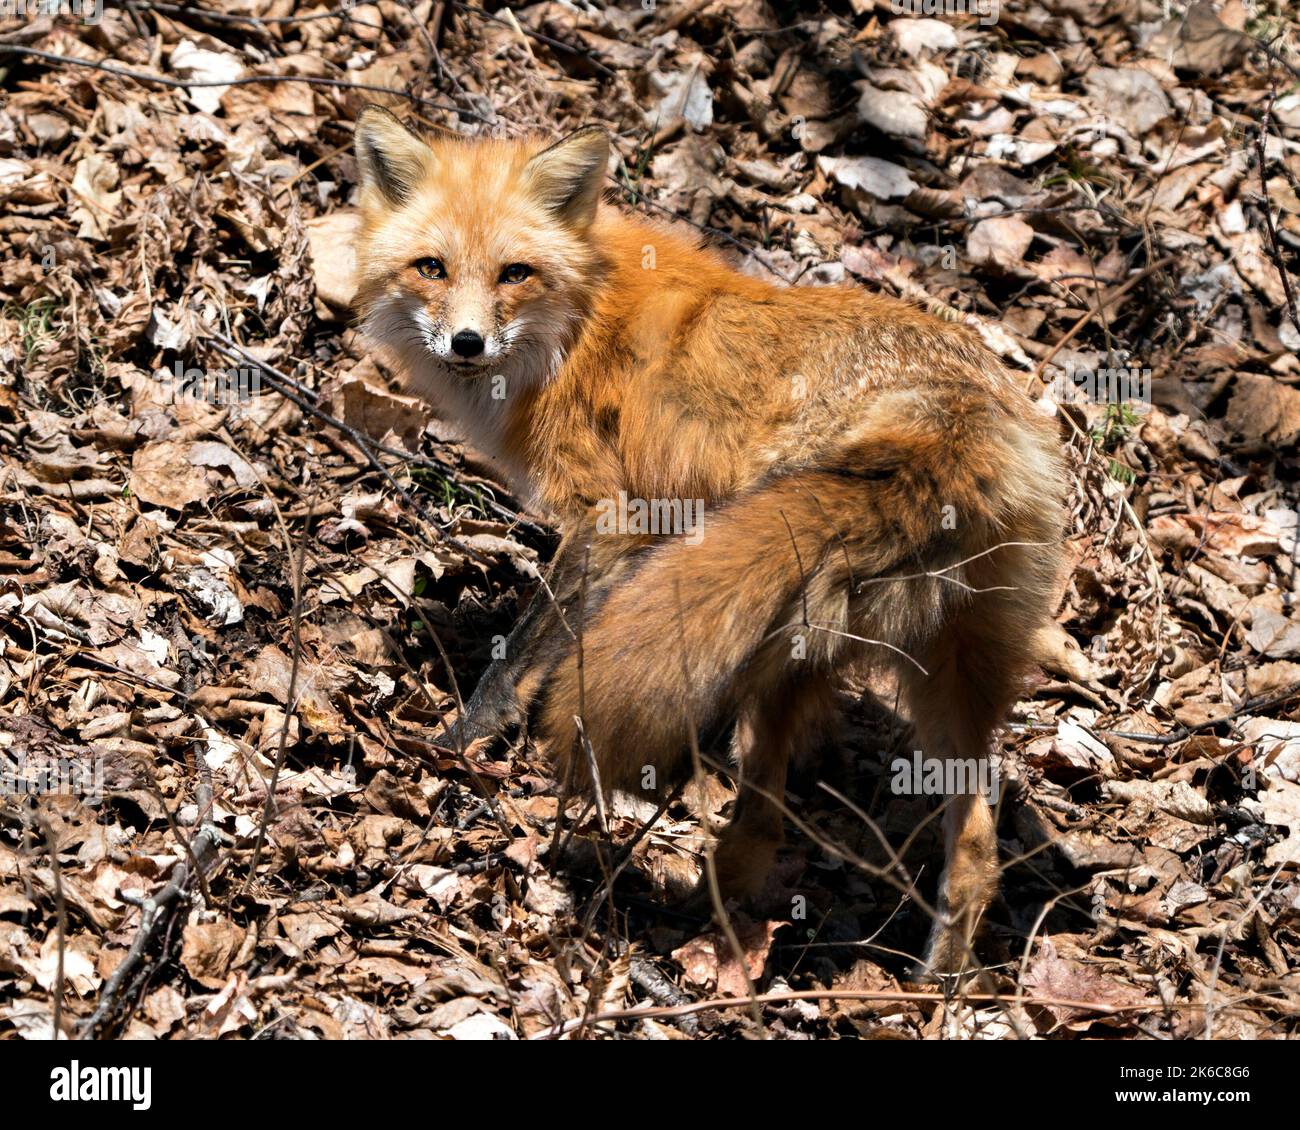 Vue rapprochée du profil du renard roux au printemps montrant la queue de renard, la fourrure, dans son habitat avec un arrière-plan de feuilles brunes. Fox image. Banque D'Images